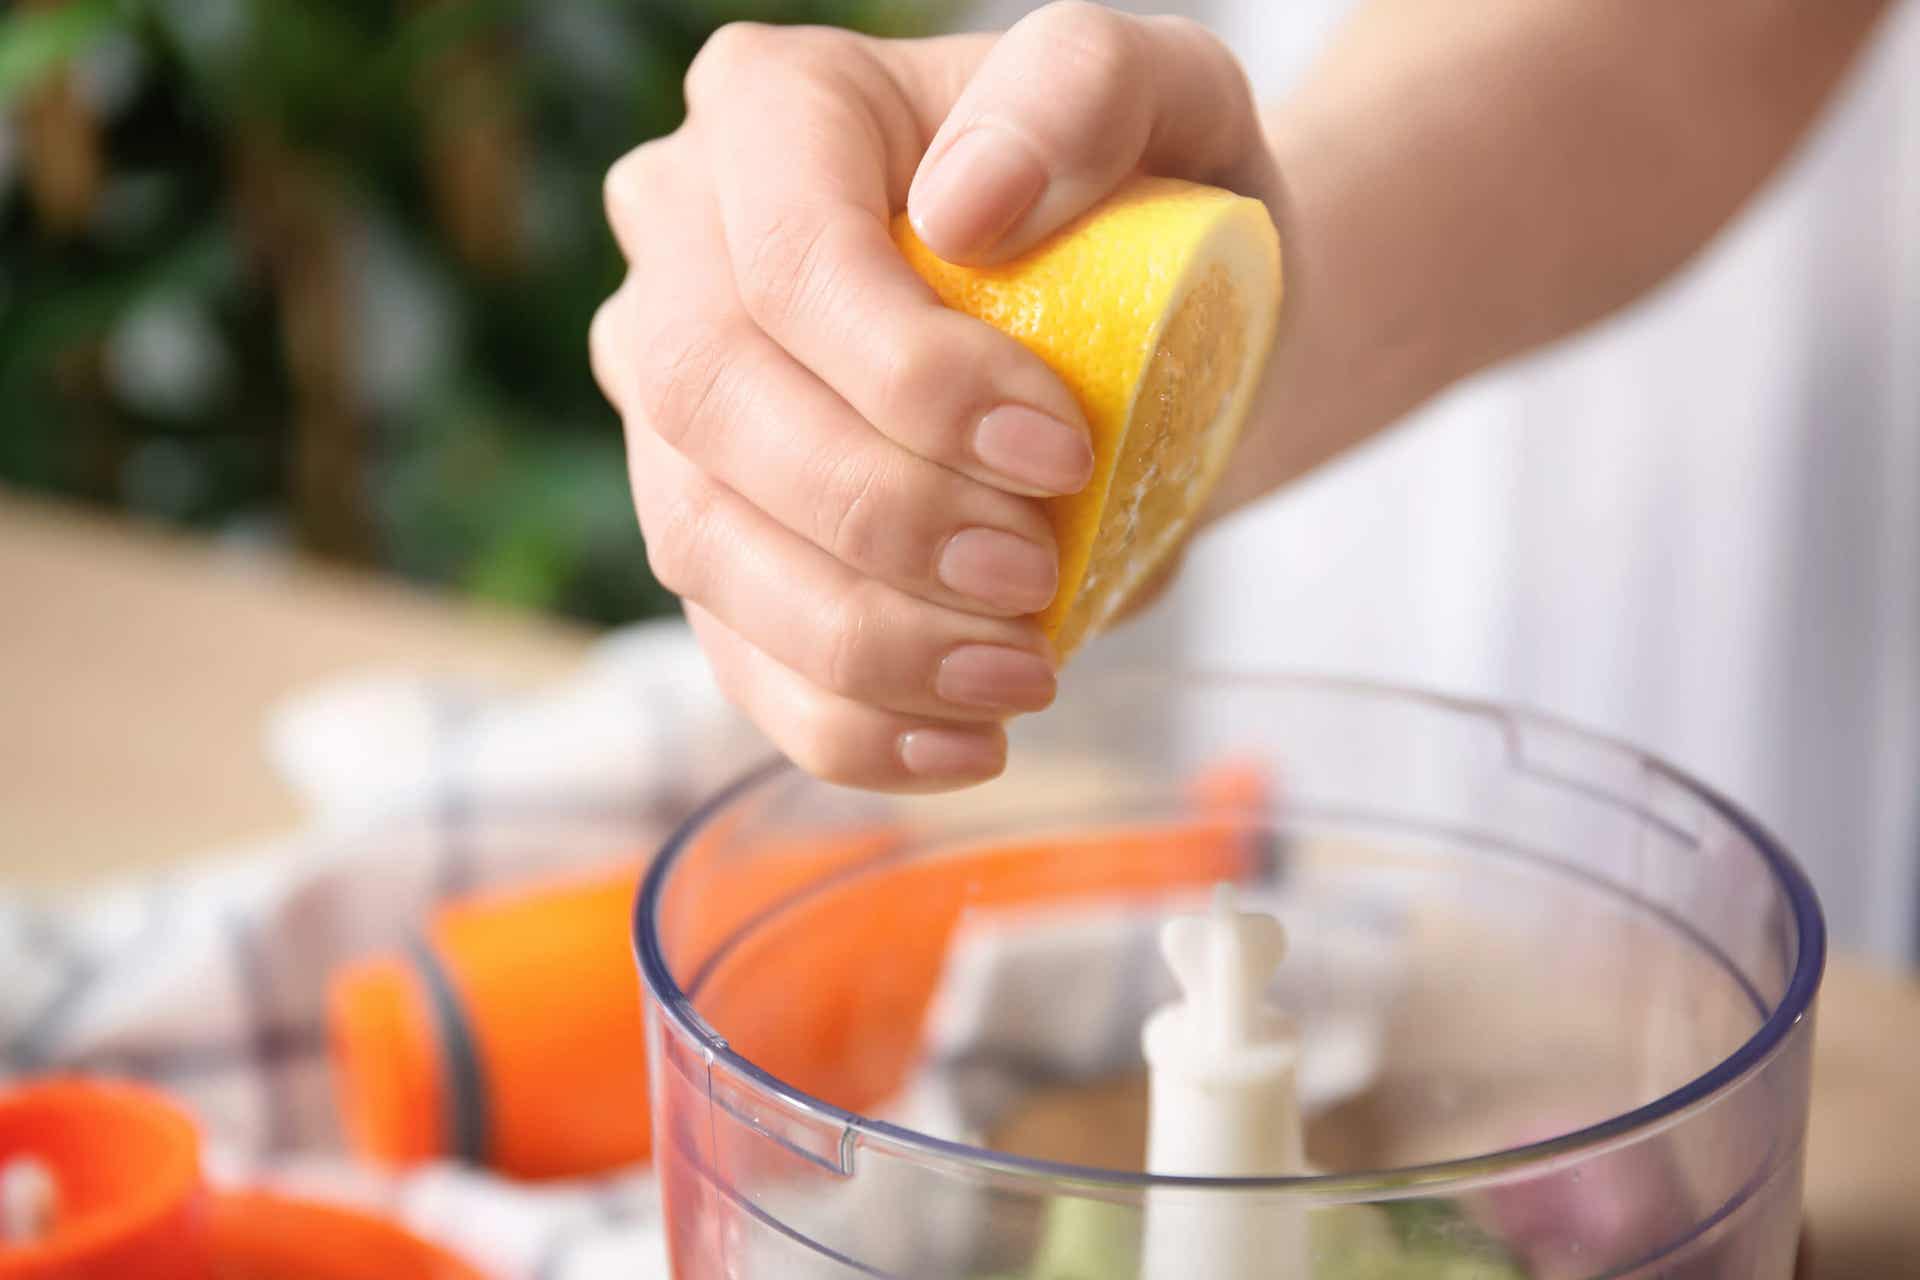 Zitrone mit Salz - Frau presst eine Zitrone aus